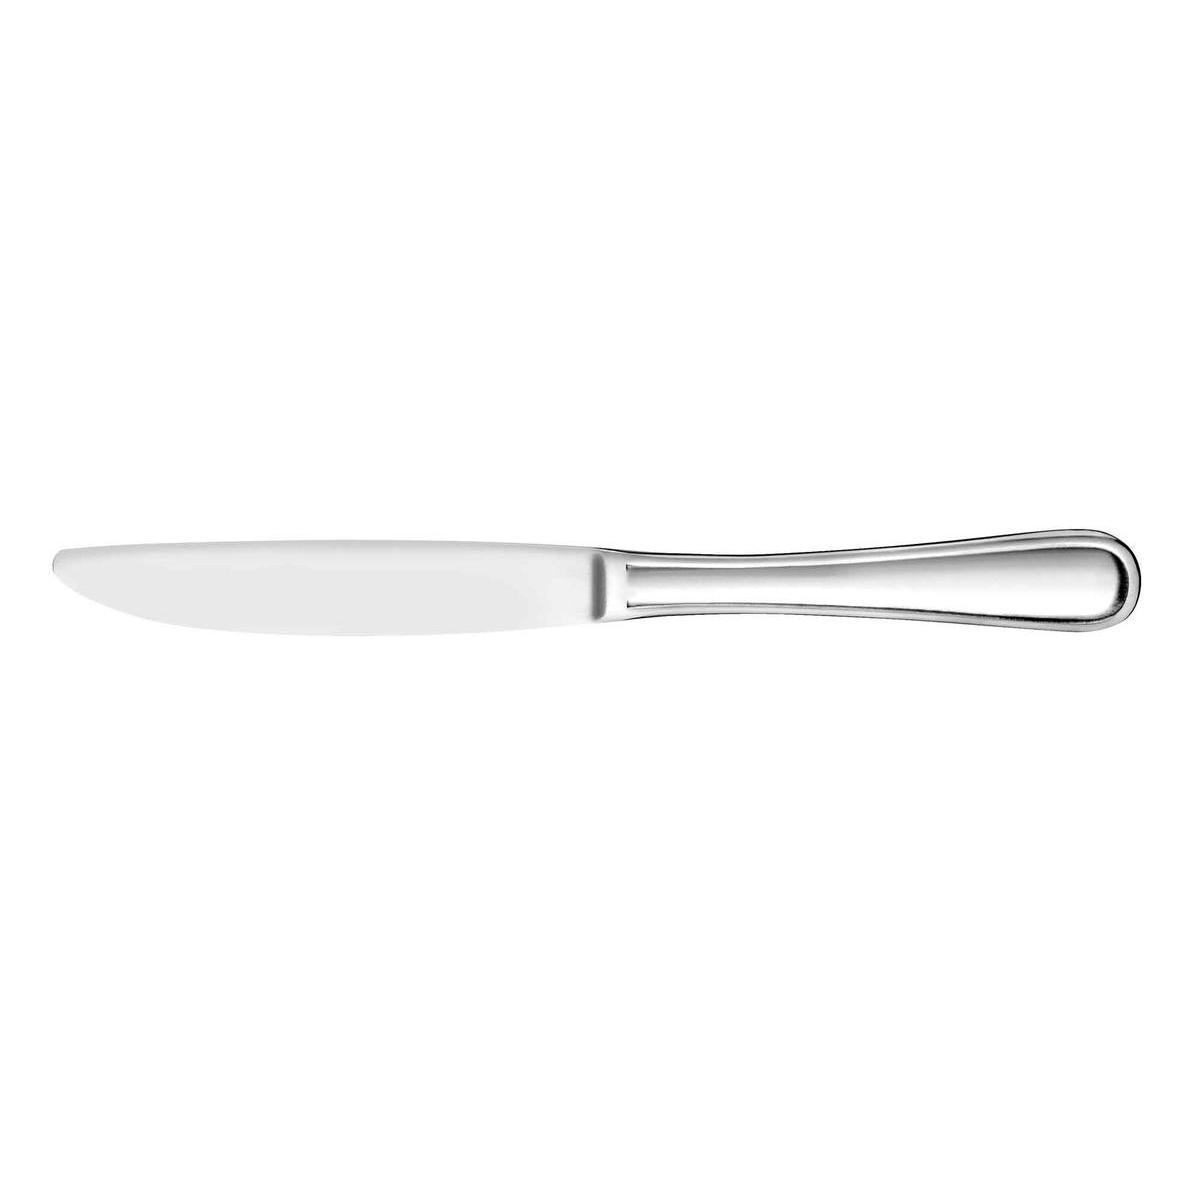 Couteau style tout inox - Acier inoxydable - 23,1 cm - Acier